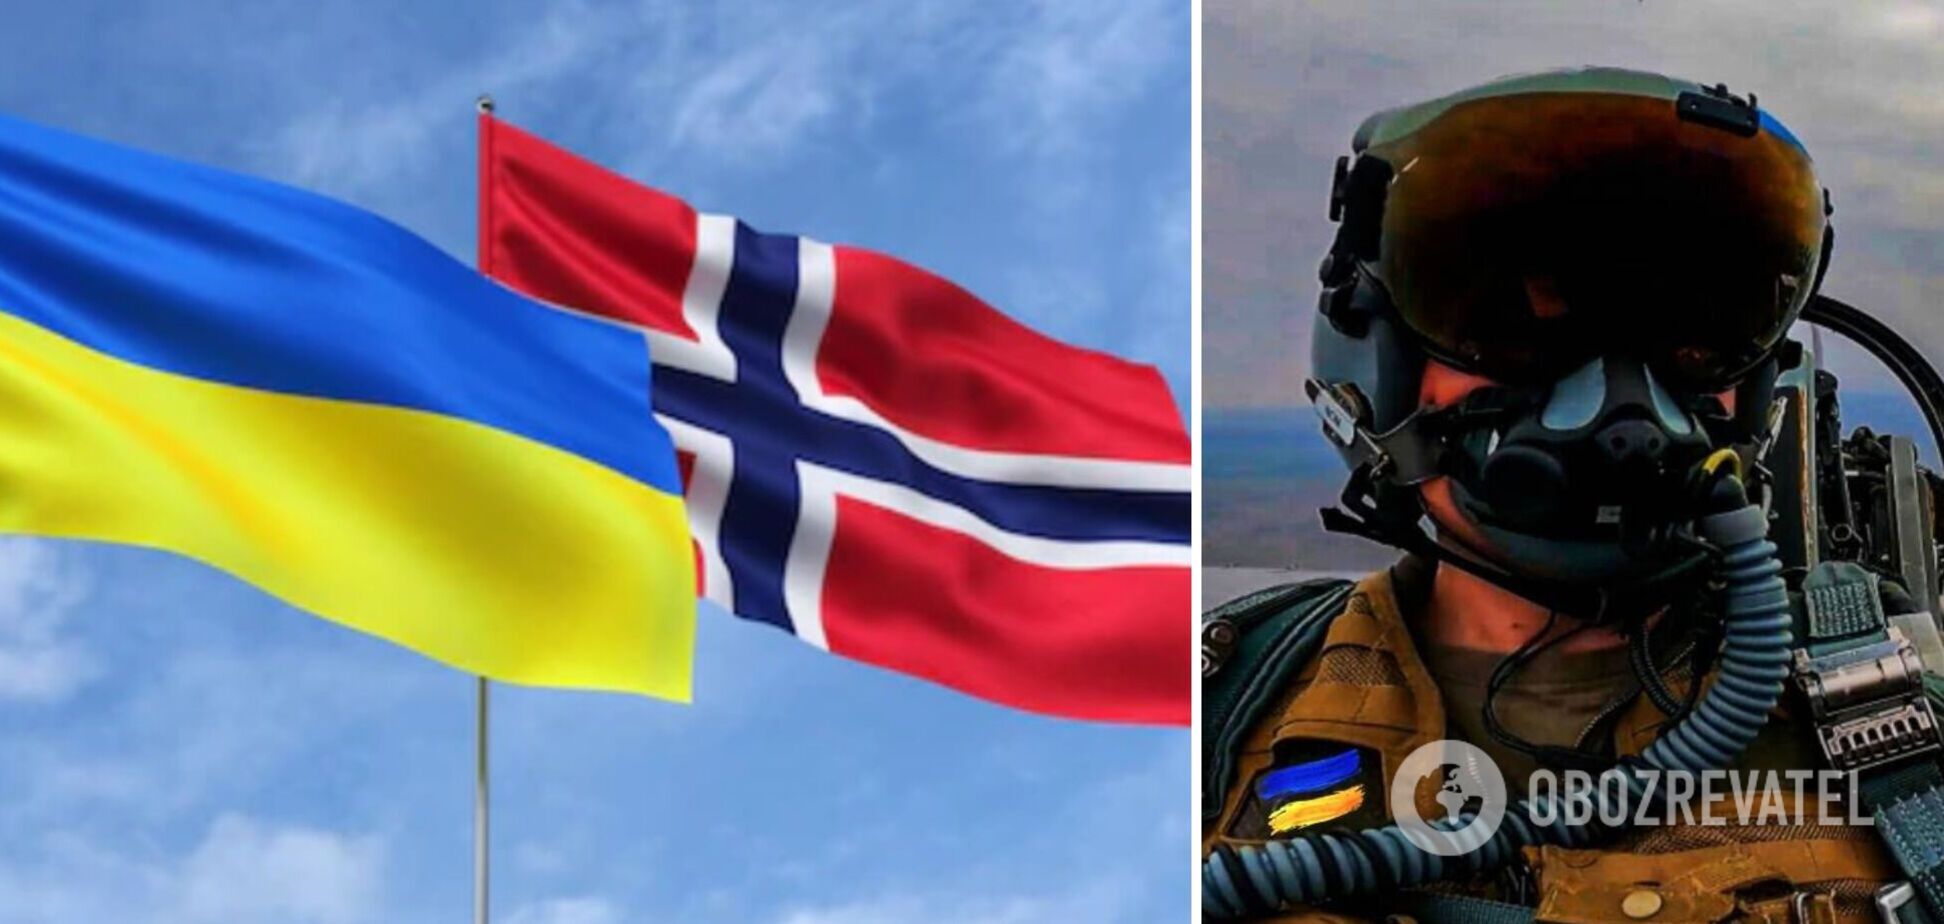 Норвегия может организовать обучение для украинских пилотов, — Зеленский